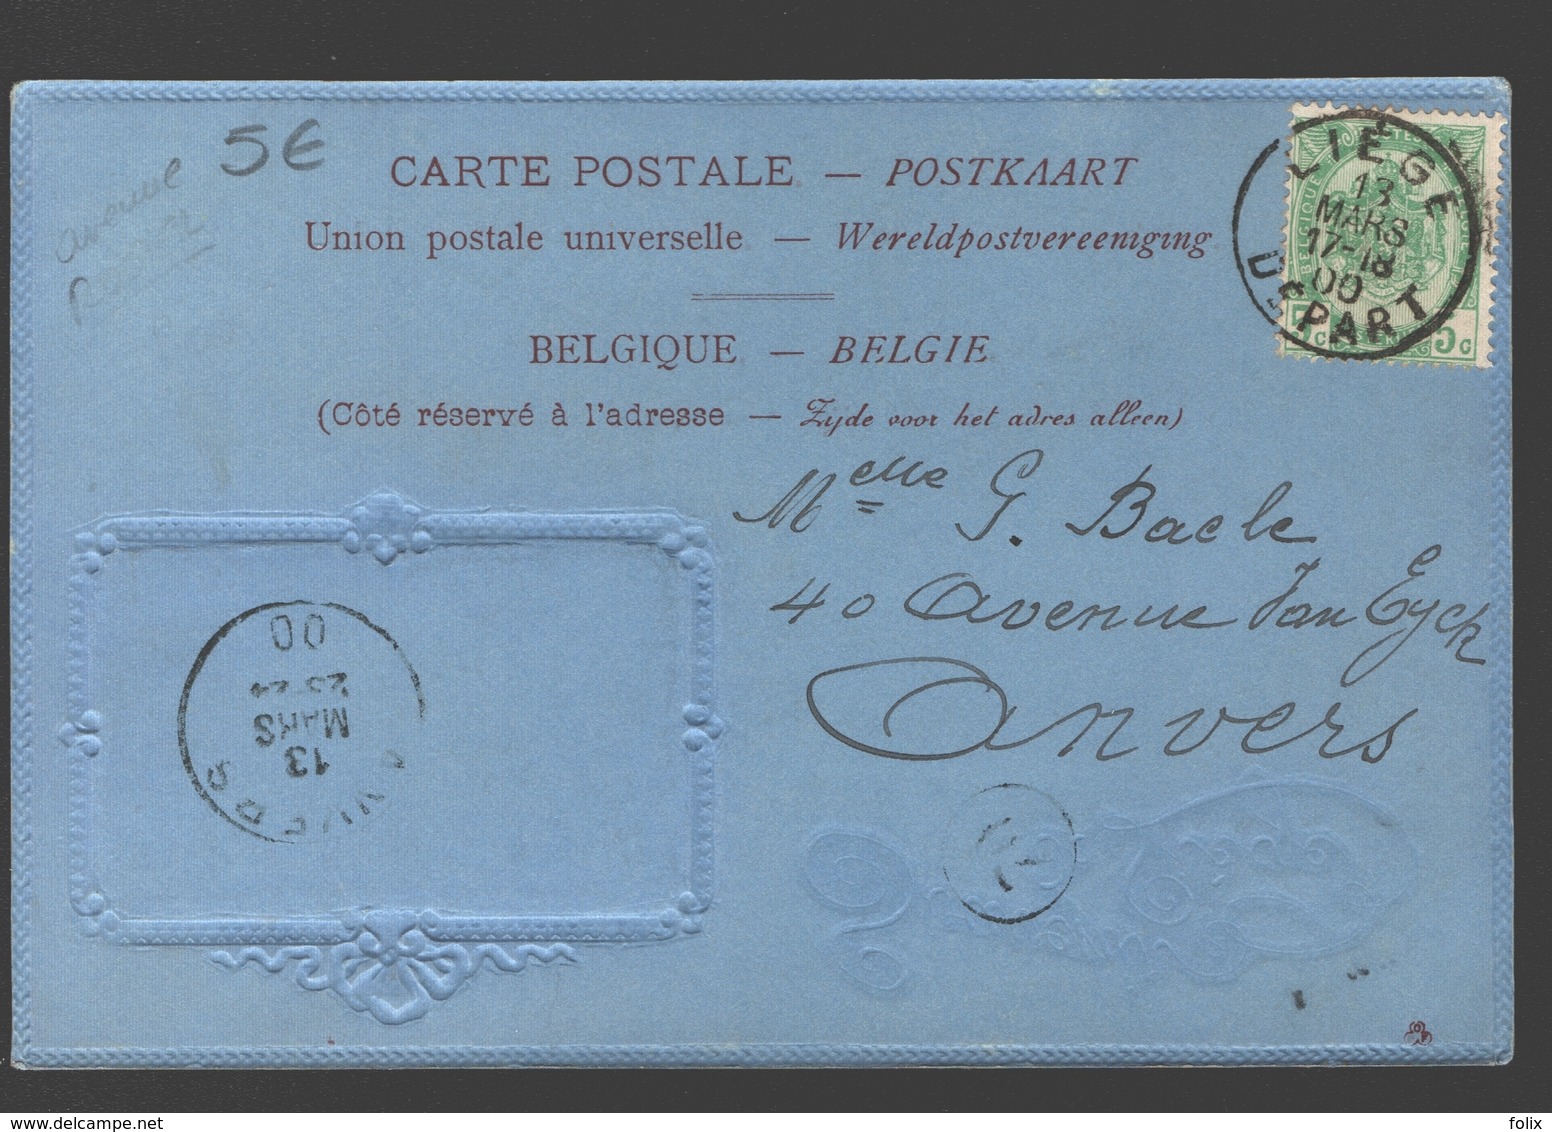 Liège - Souvenir De Liège - 1900 - Carton Bleu / Blauw Karton - Reliëf - éd. Maréchal-Ory, Liège - Liege